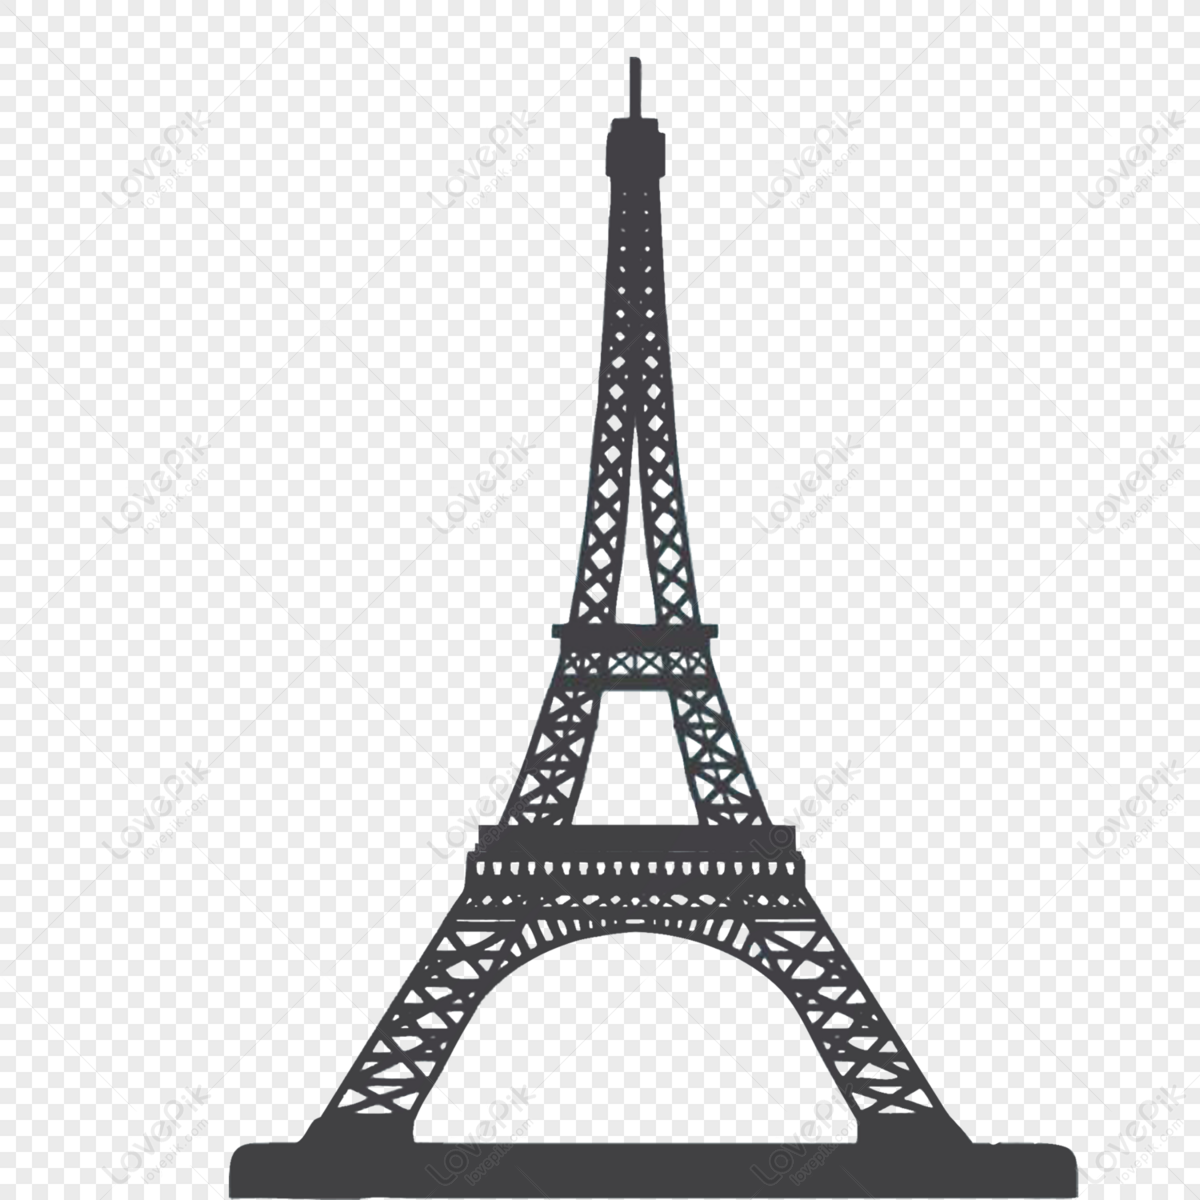 Eiffel Tower, nordic architecture, eiffel tower, paris png transparent image